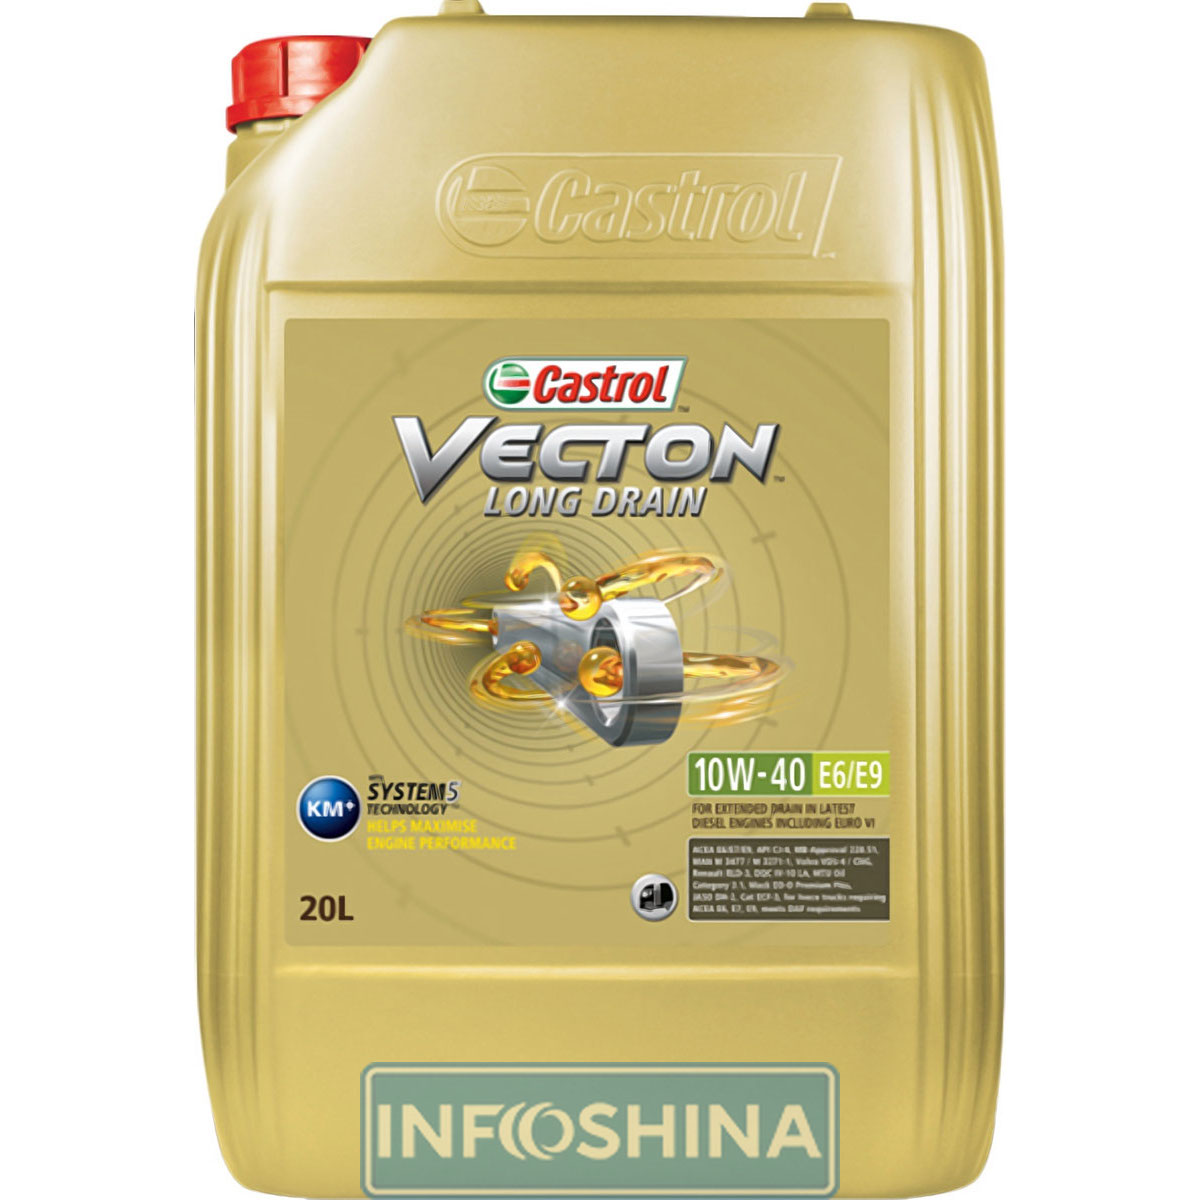 Купить масло Castrol Vecton Long Drain 10W-40 E6/E9 (20л)